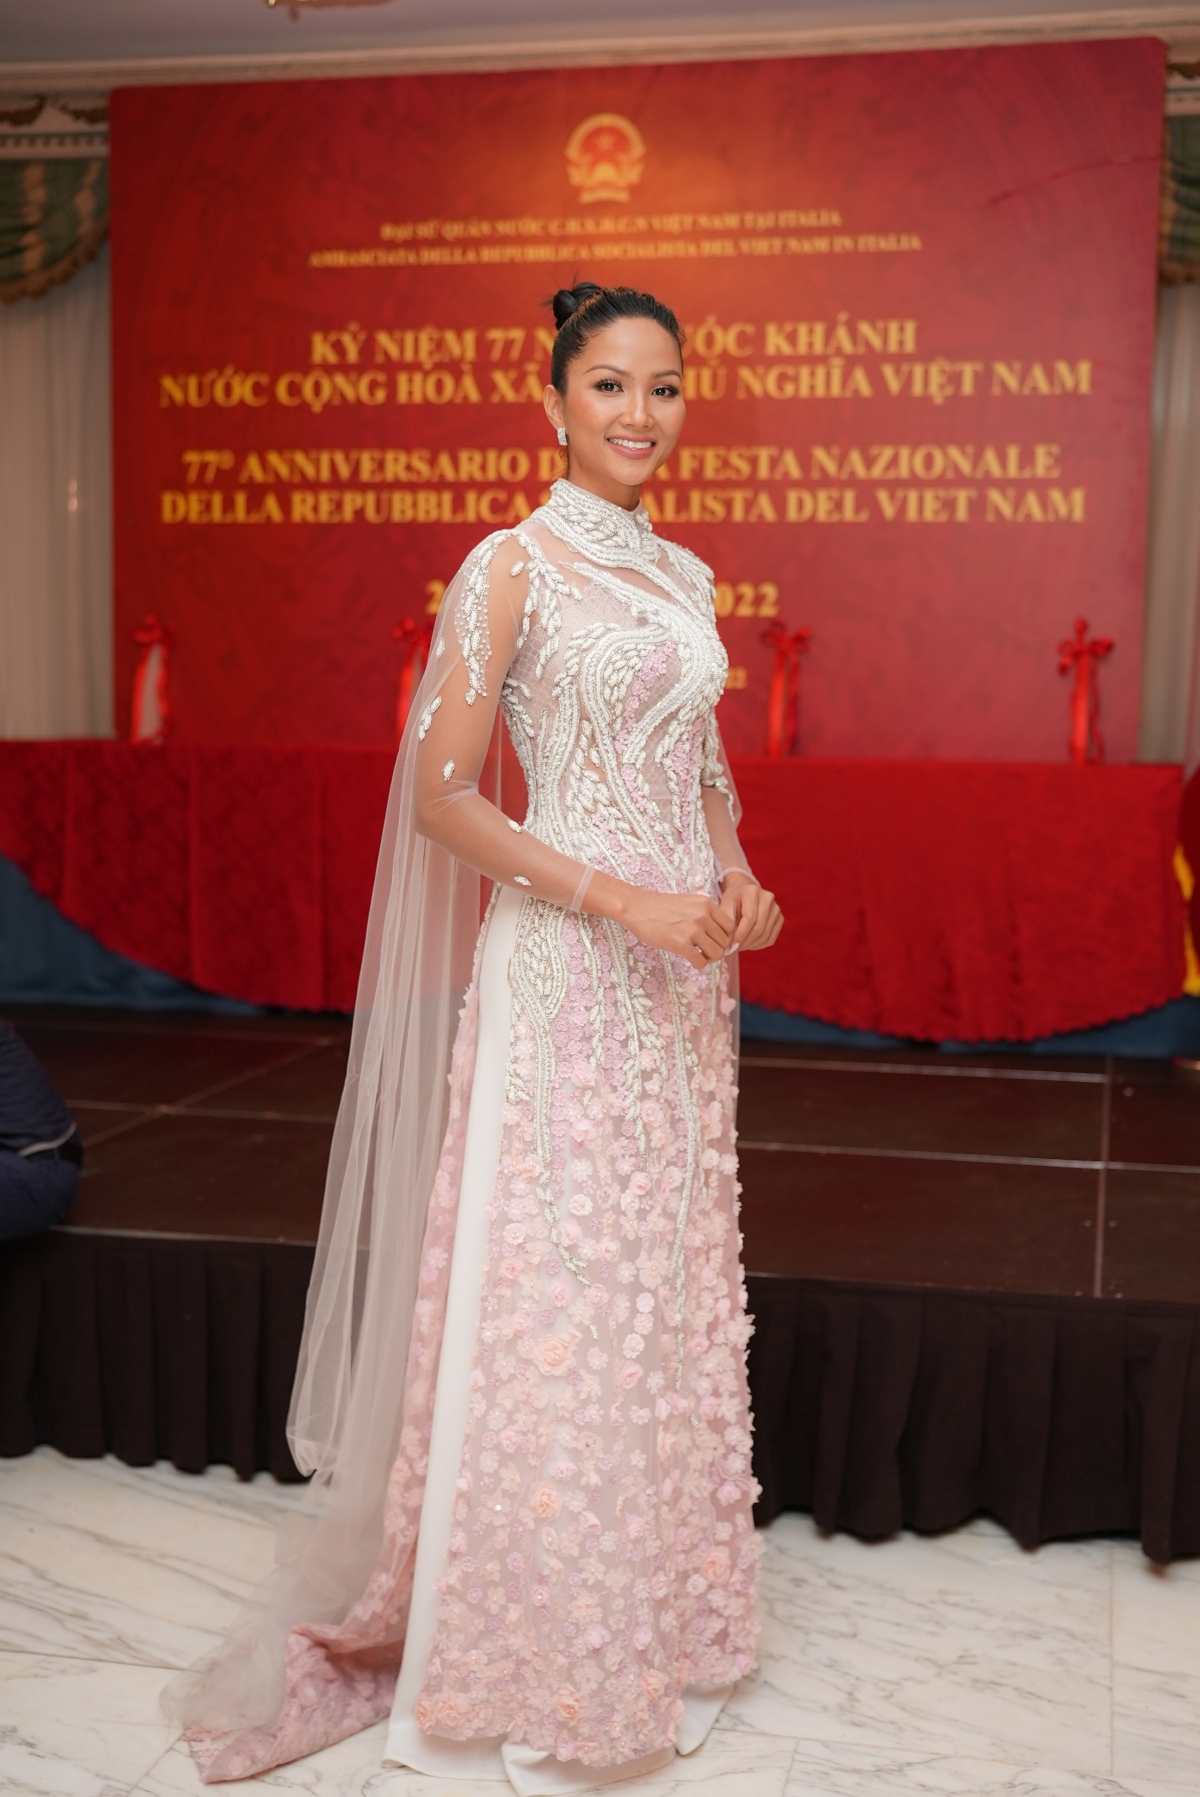 Hoa hậu HHen Niê diện áo dài đính hoa dự lễ ở Đại sứ quán Việt Nam tại Italia - Ảnh 2.